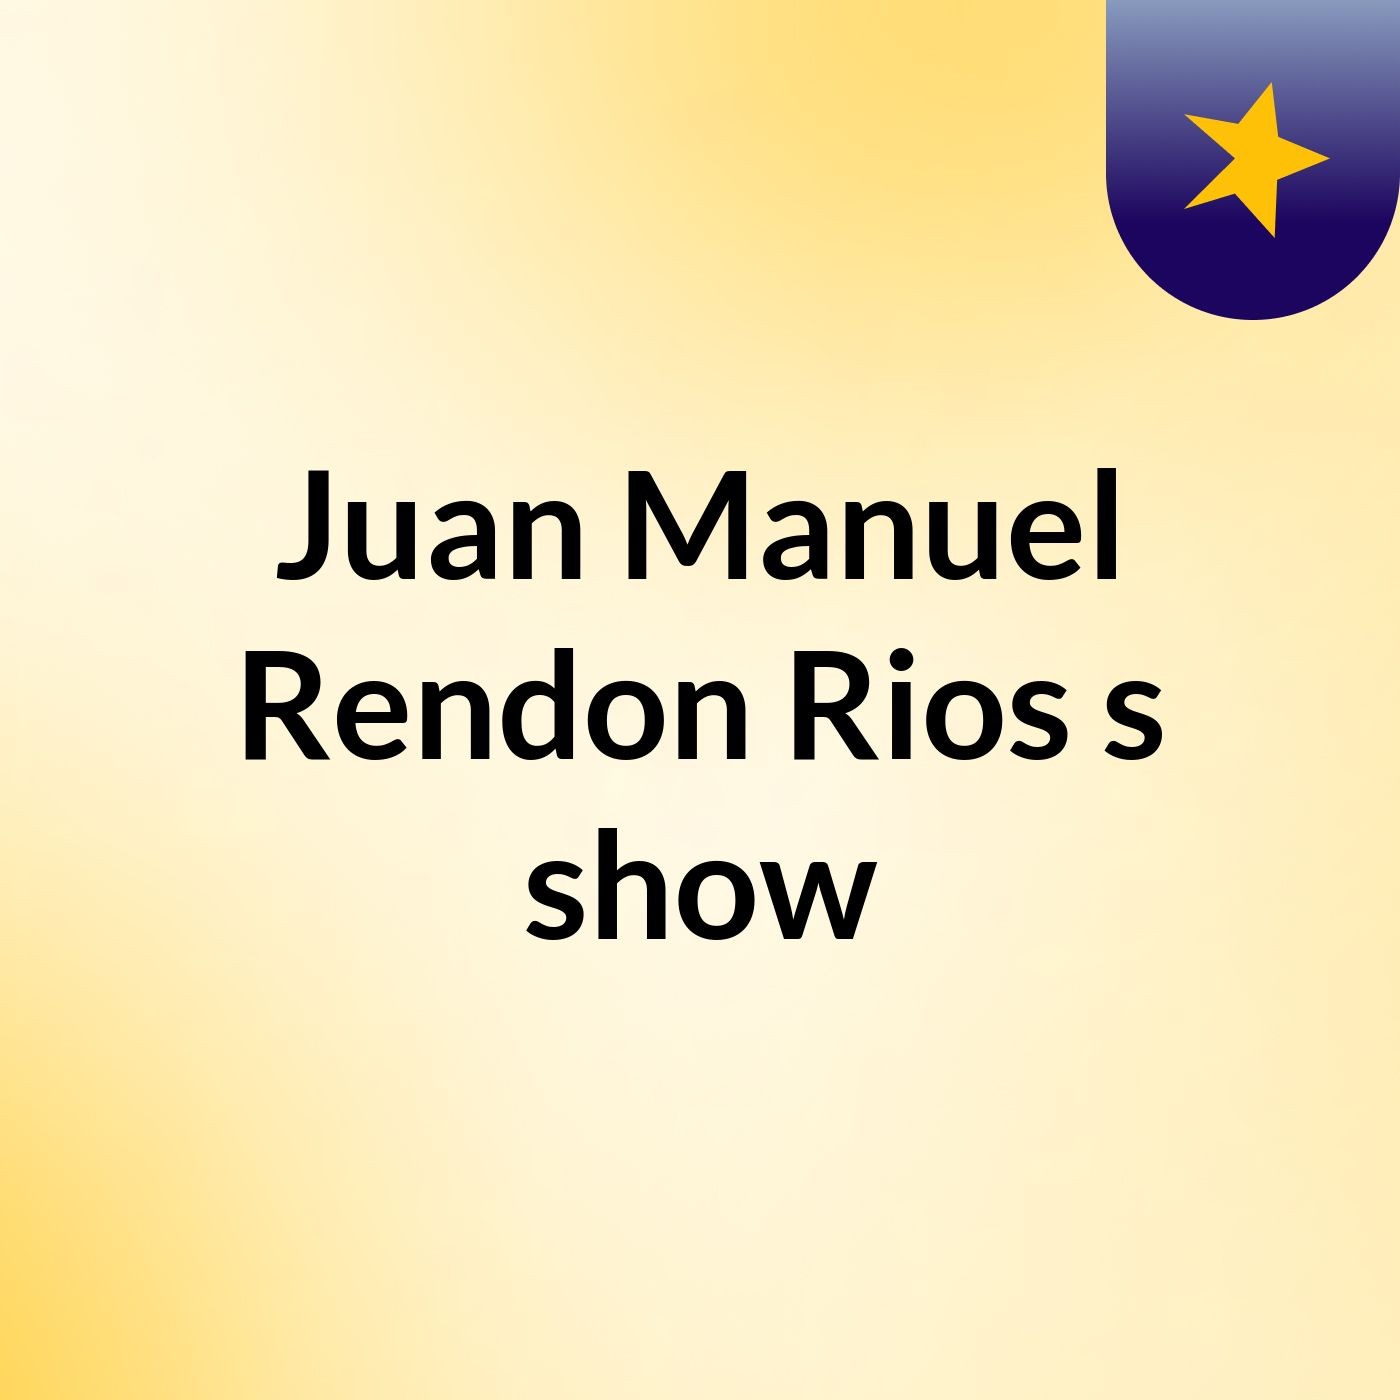 Juan Manuel Rendon Rios's show